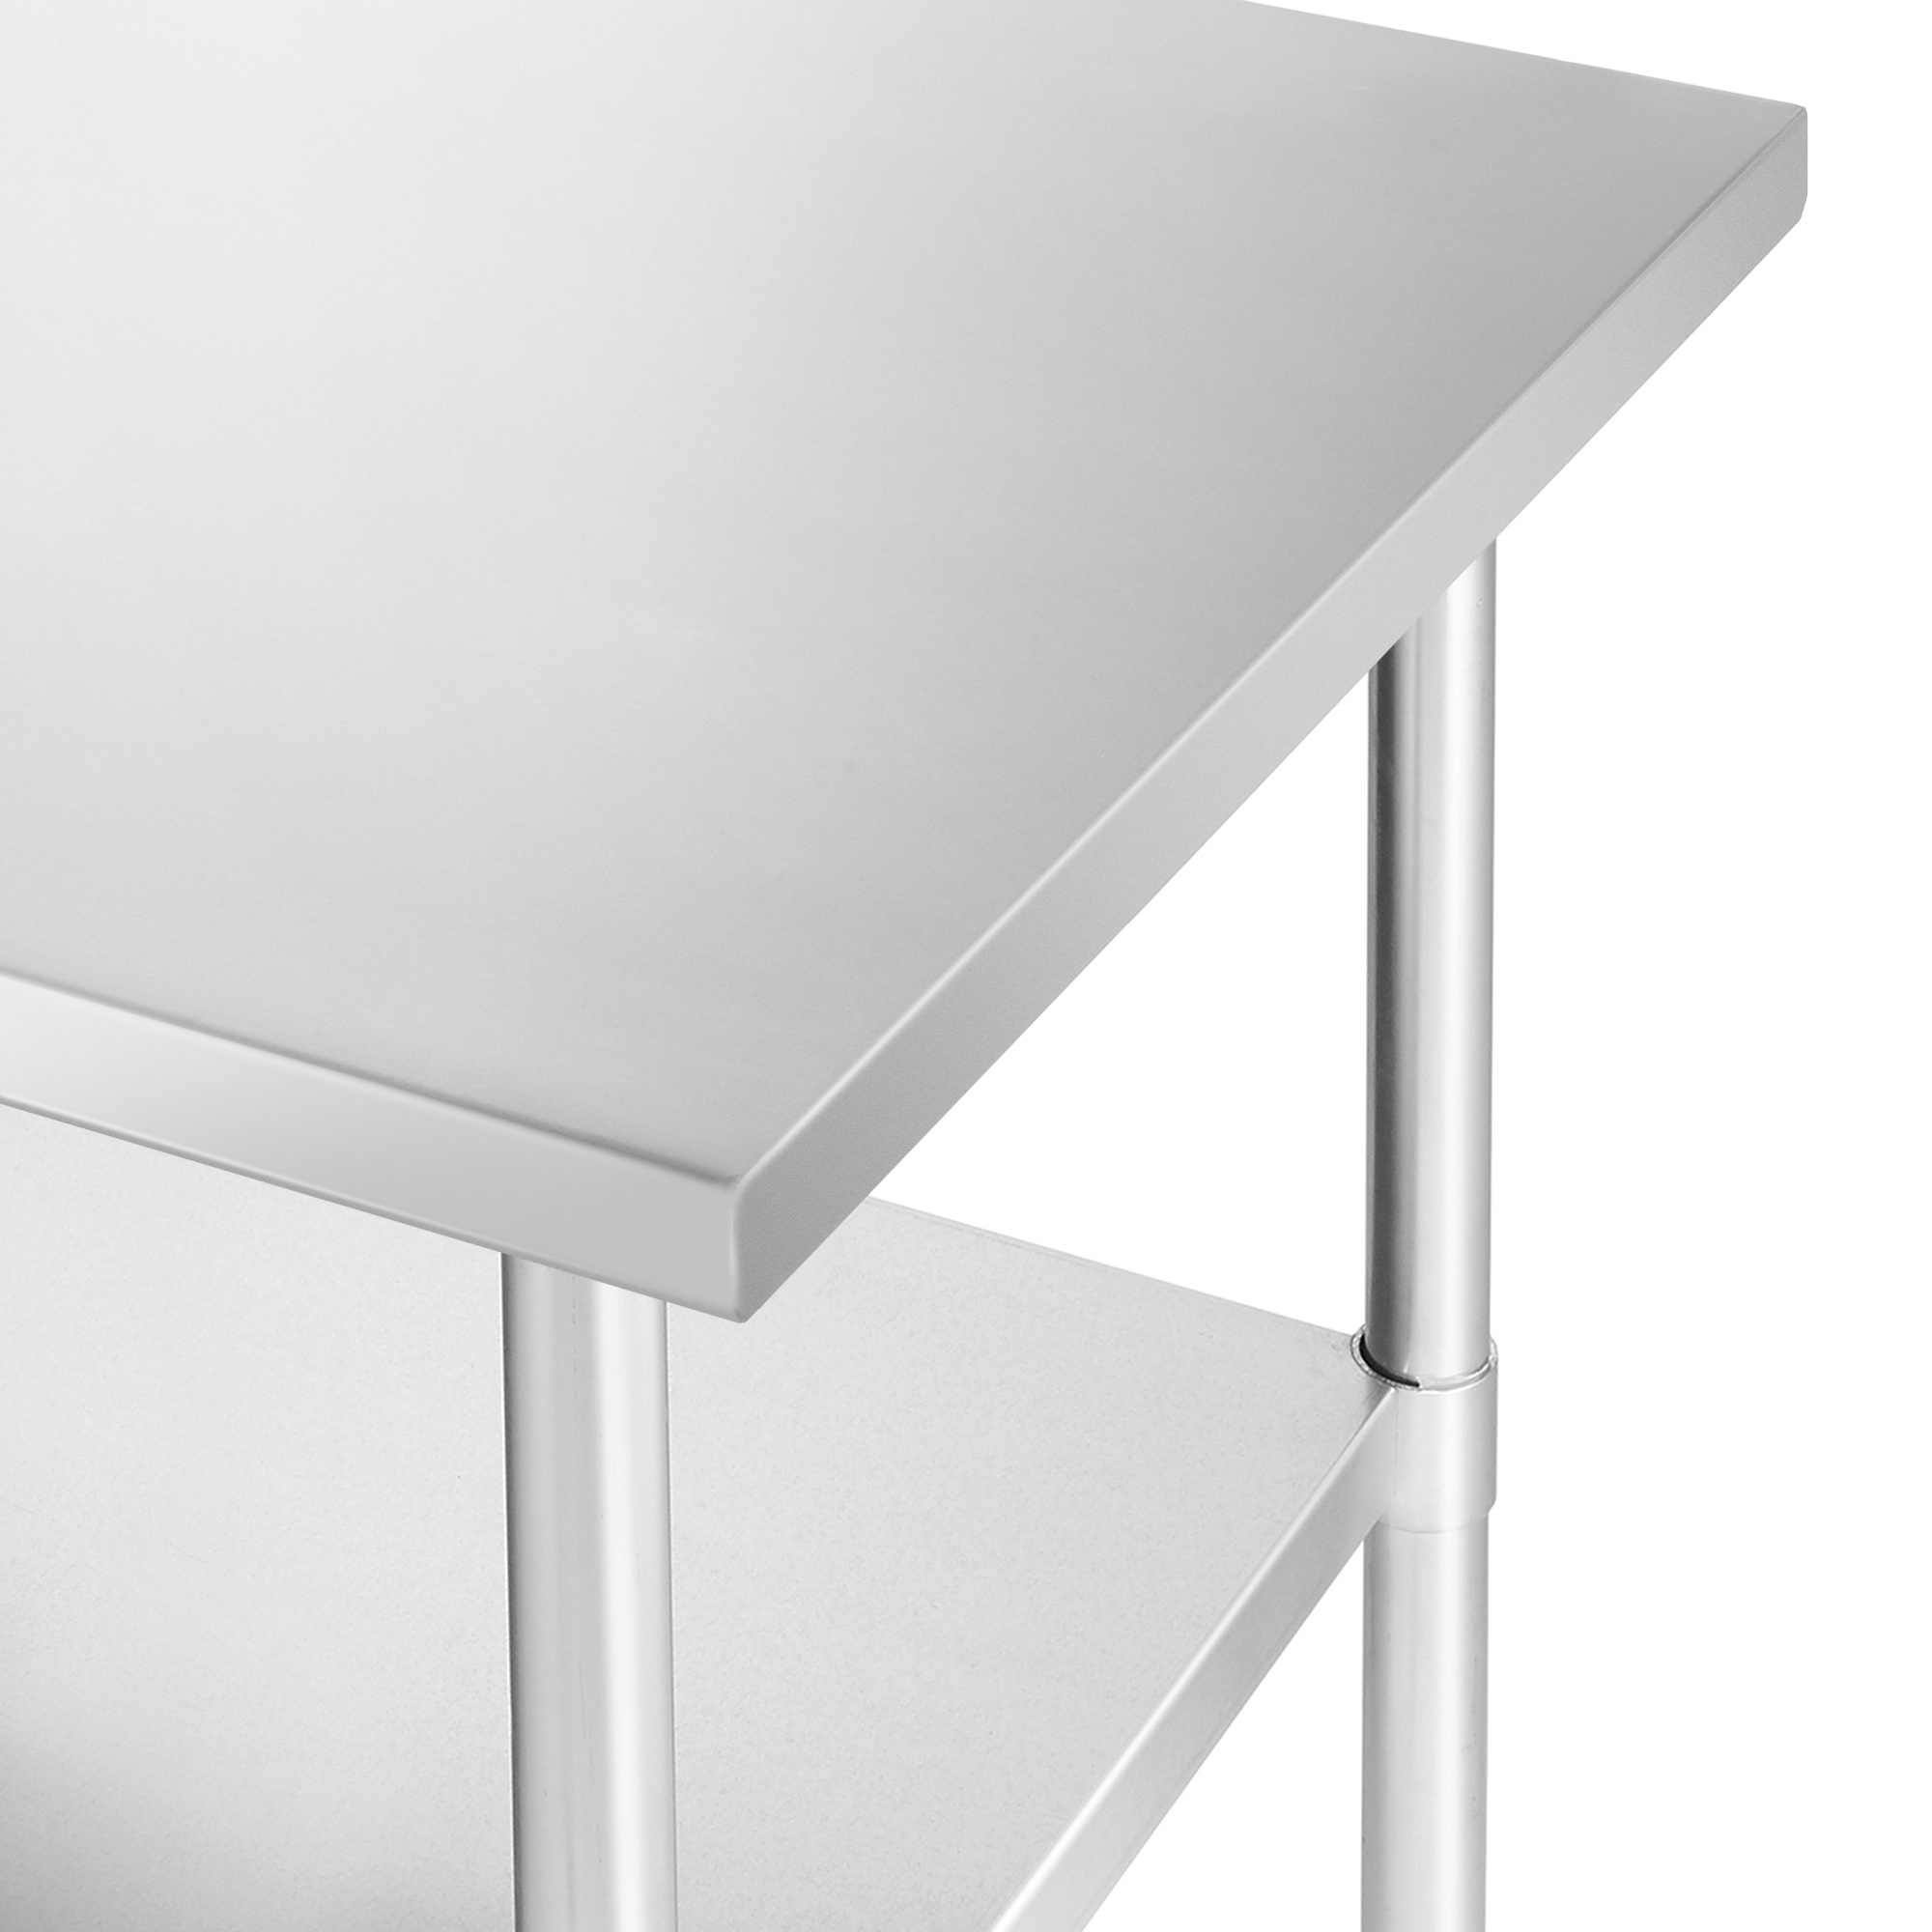 Kutler 24x60 Stainless Steel Table, NSF Commercial Restaurant Kitchen Prep & Work Table